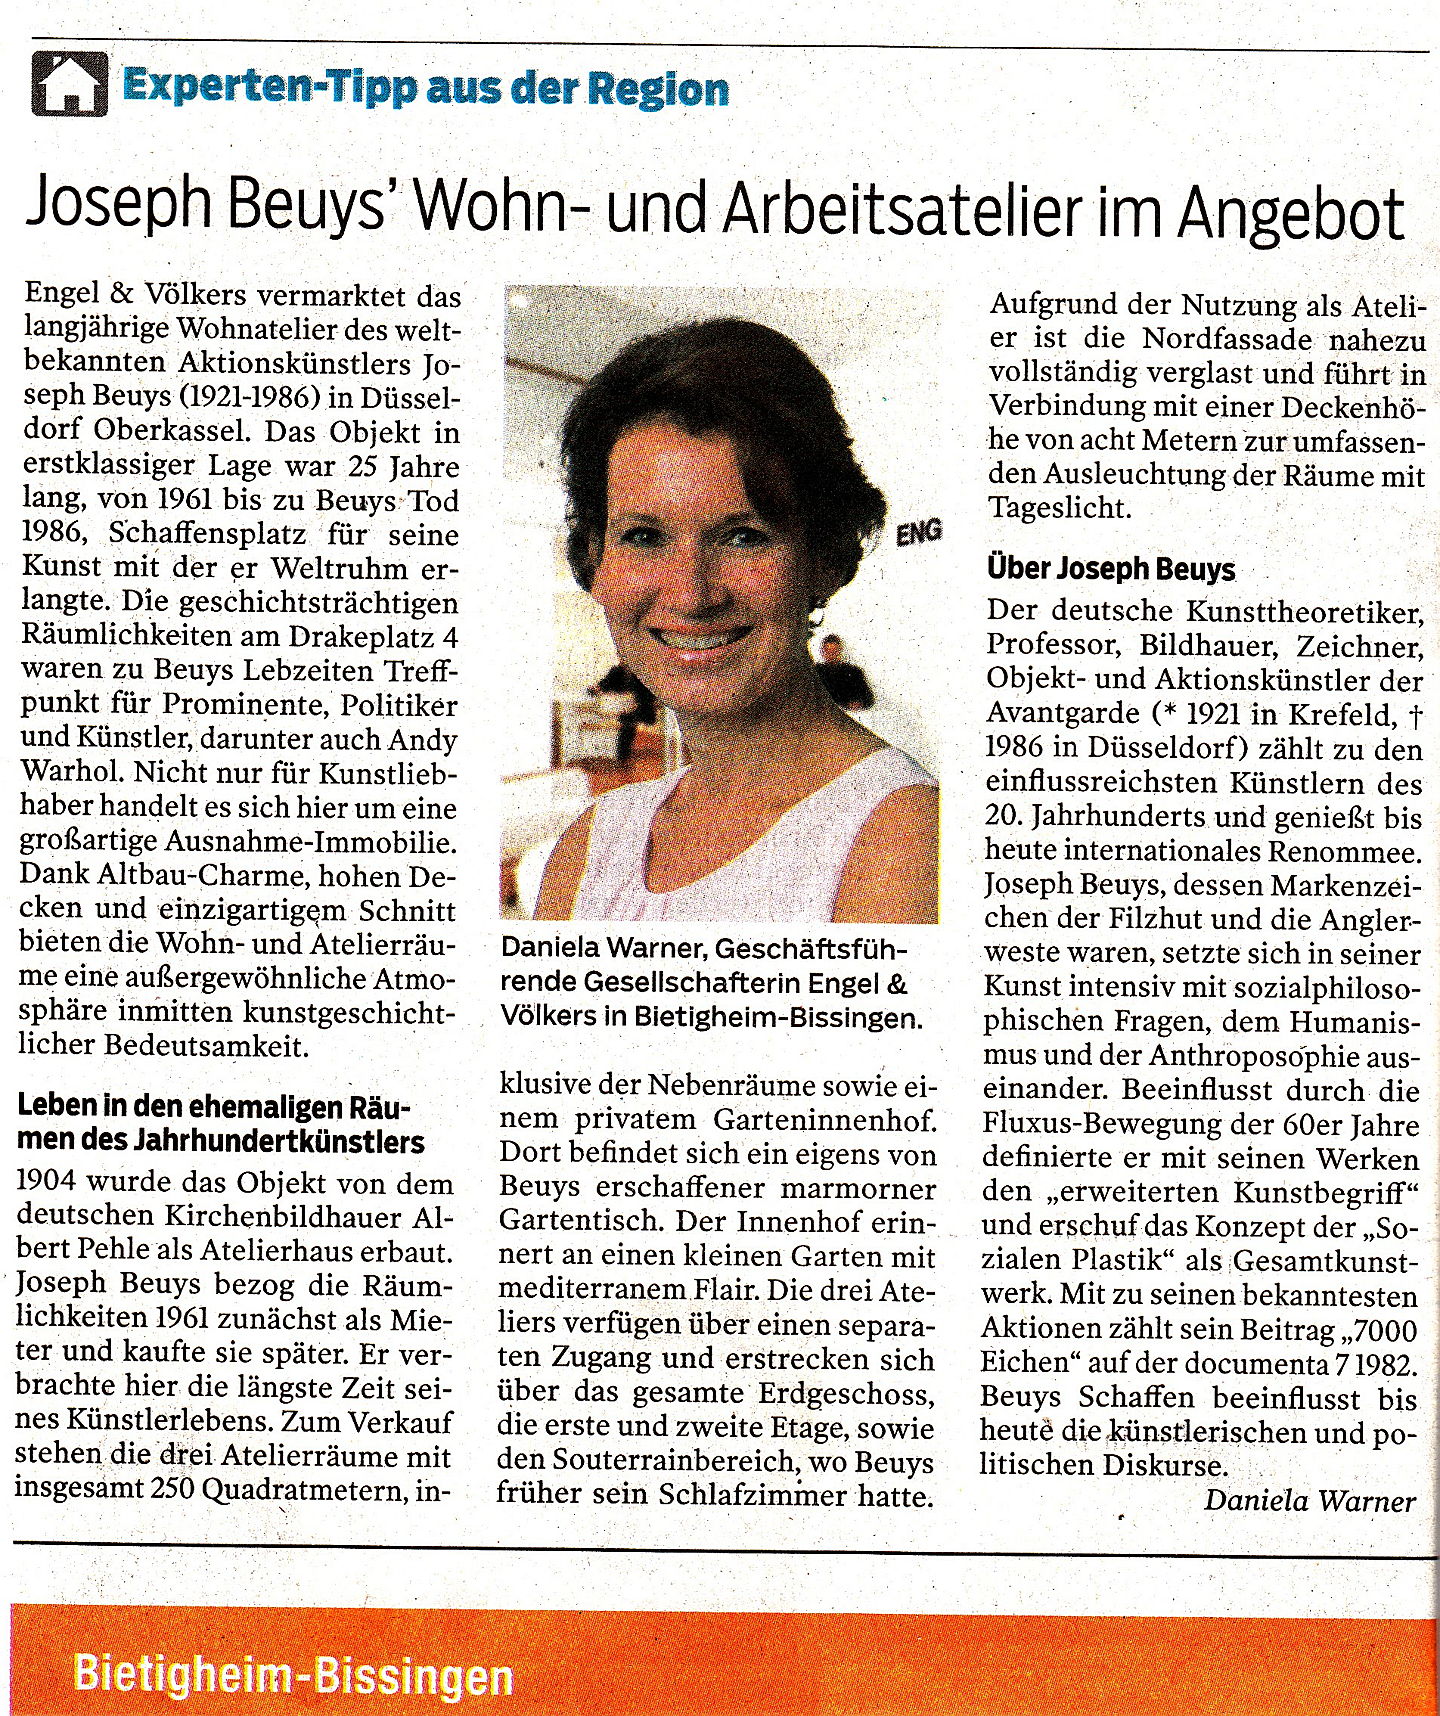  Bietigheim-Bissingen
- Joseph Beuys' Wohn- und Arbeitsatelier im Angebot.jpg